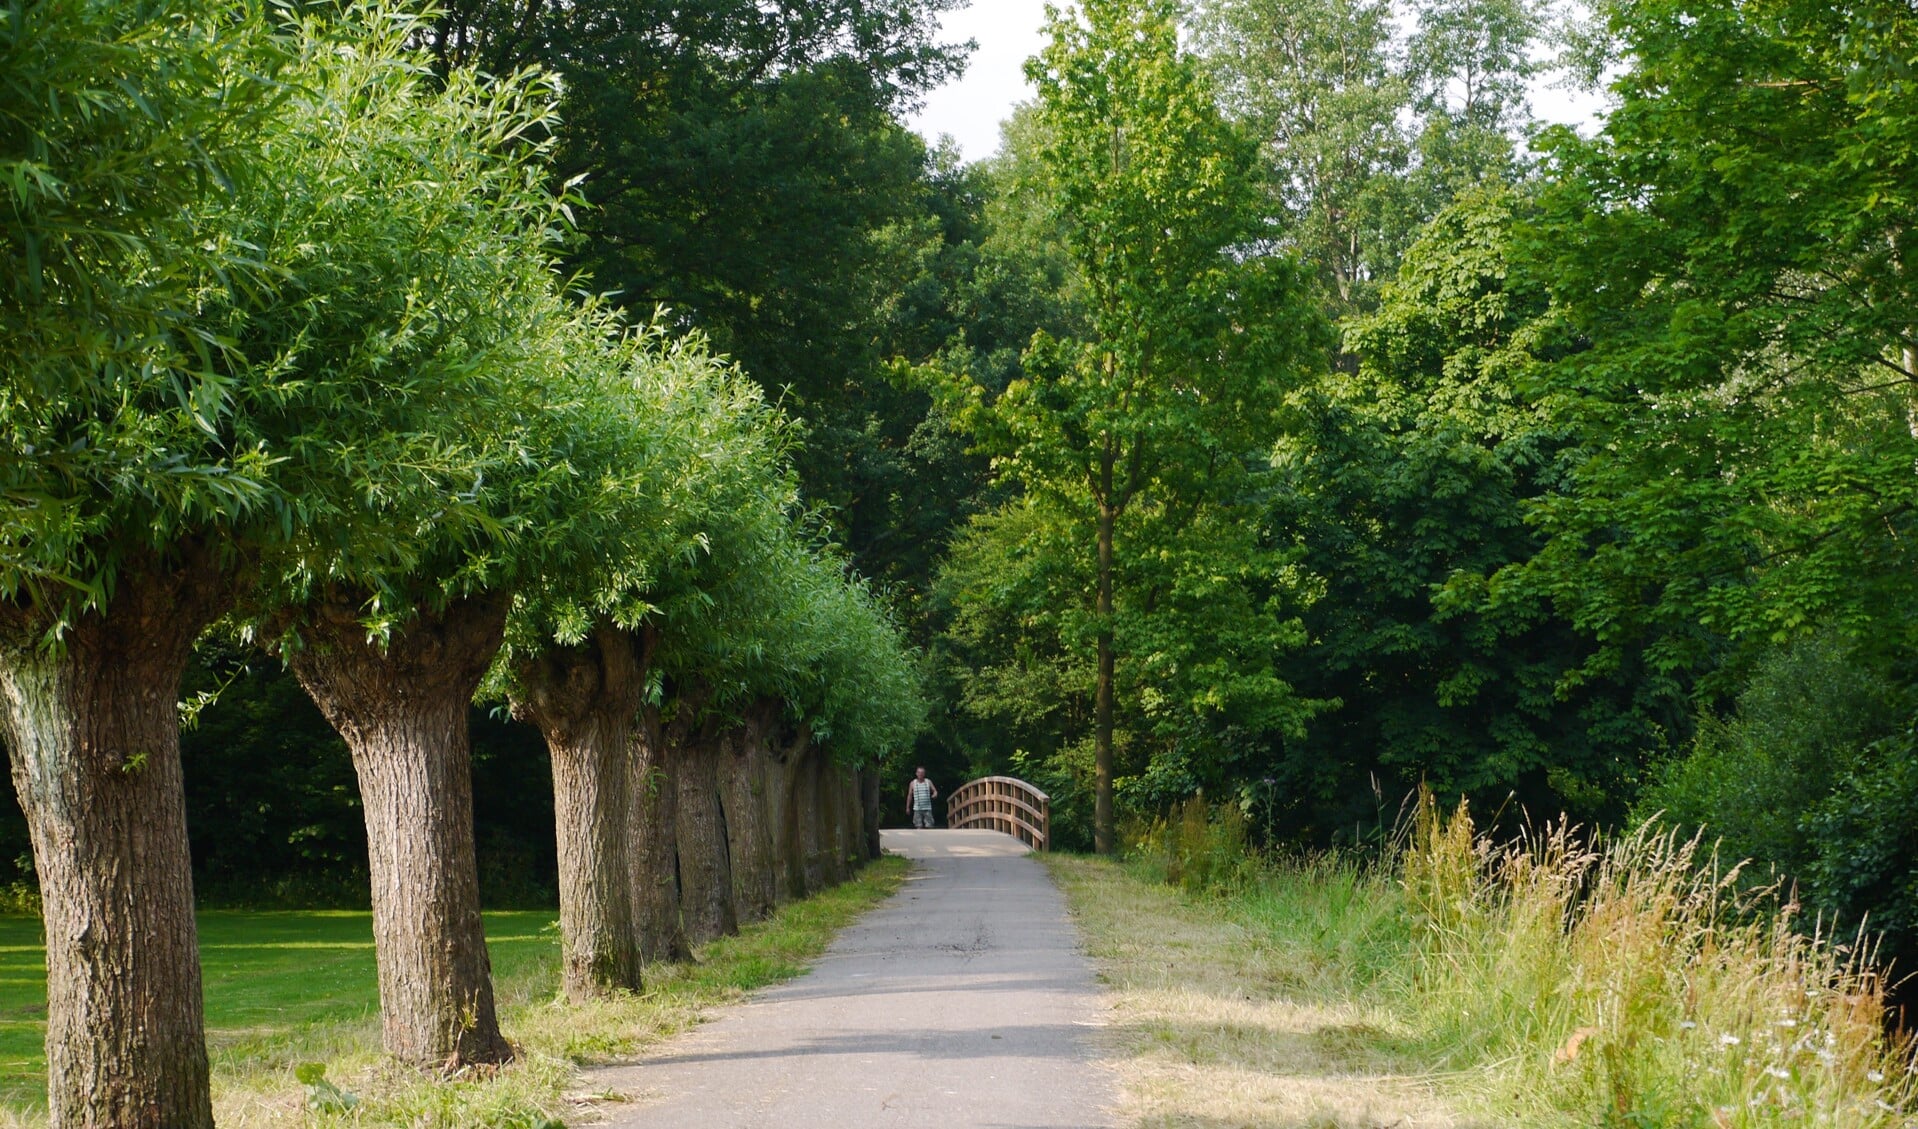 Het 'wilgenlaantje' in park De Houtkamp, zo'n mooie groene oase die de gezondheid goed doet.  